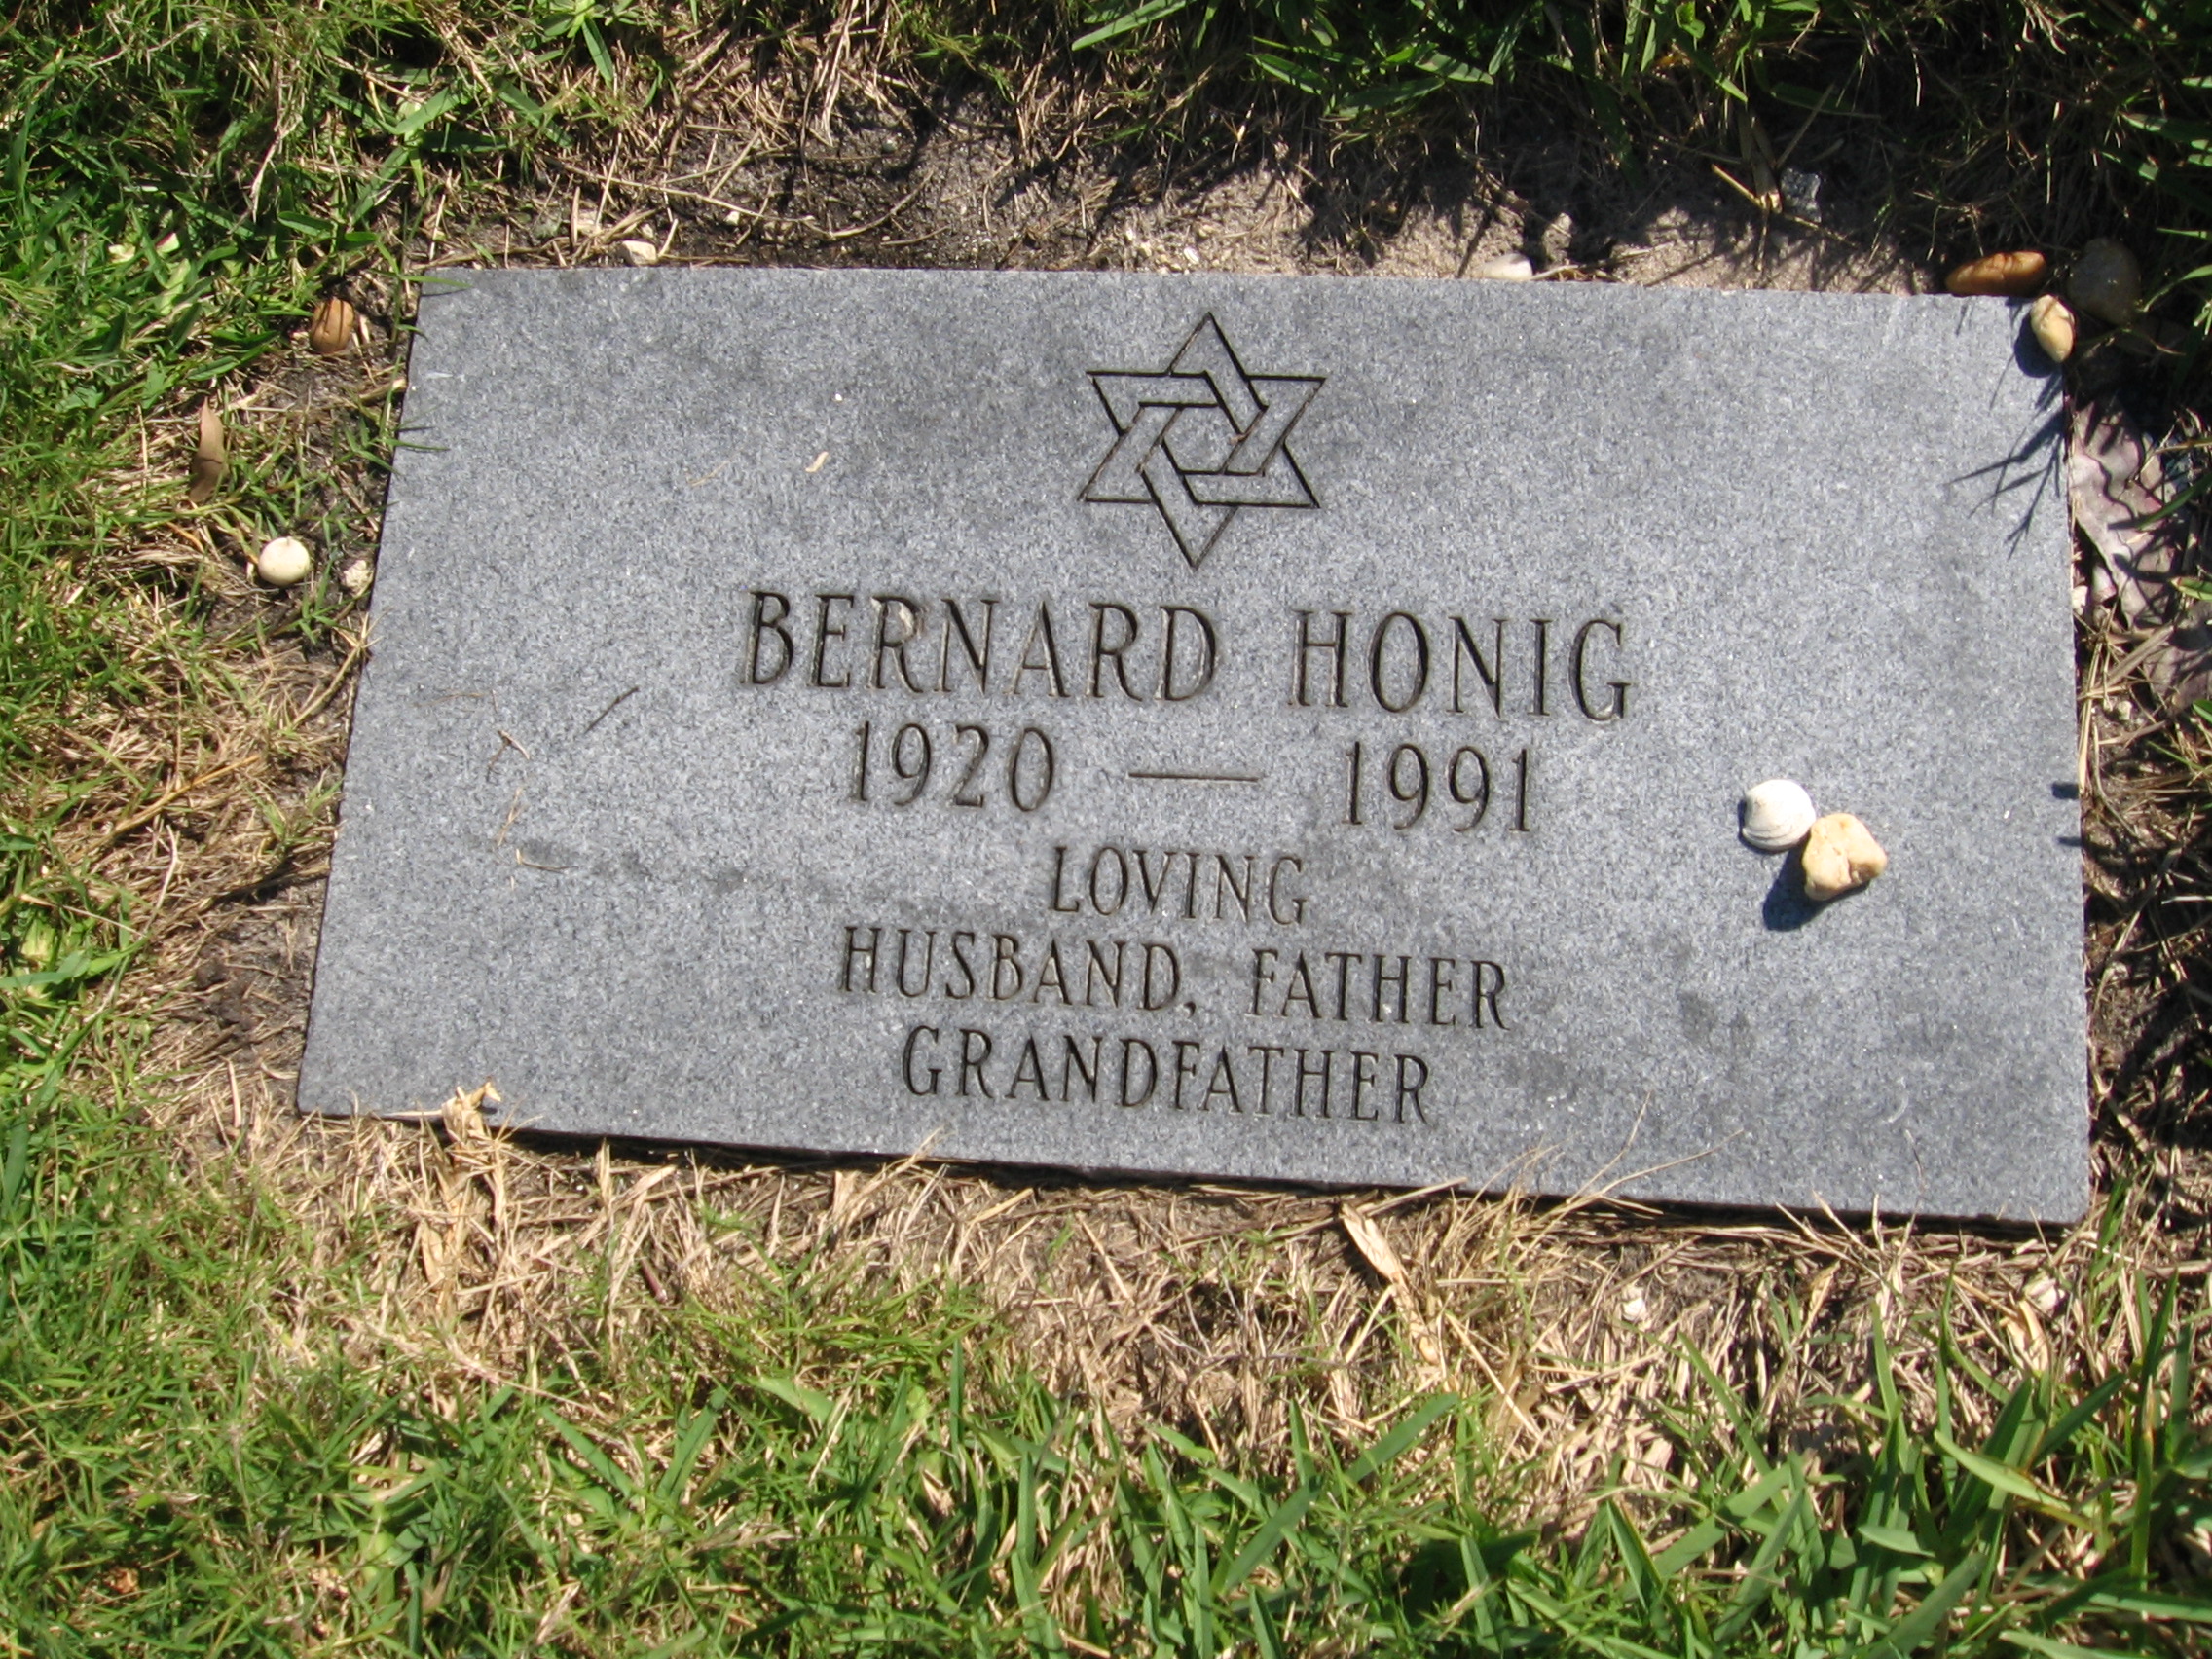 Bernard Honig